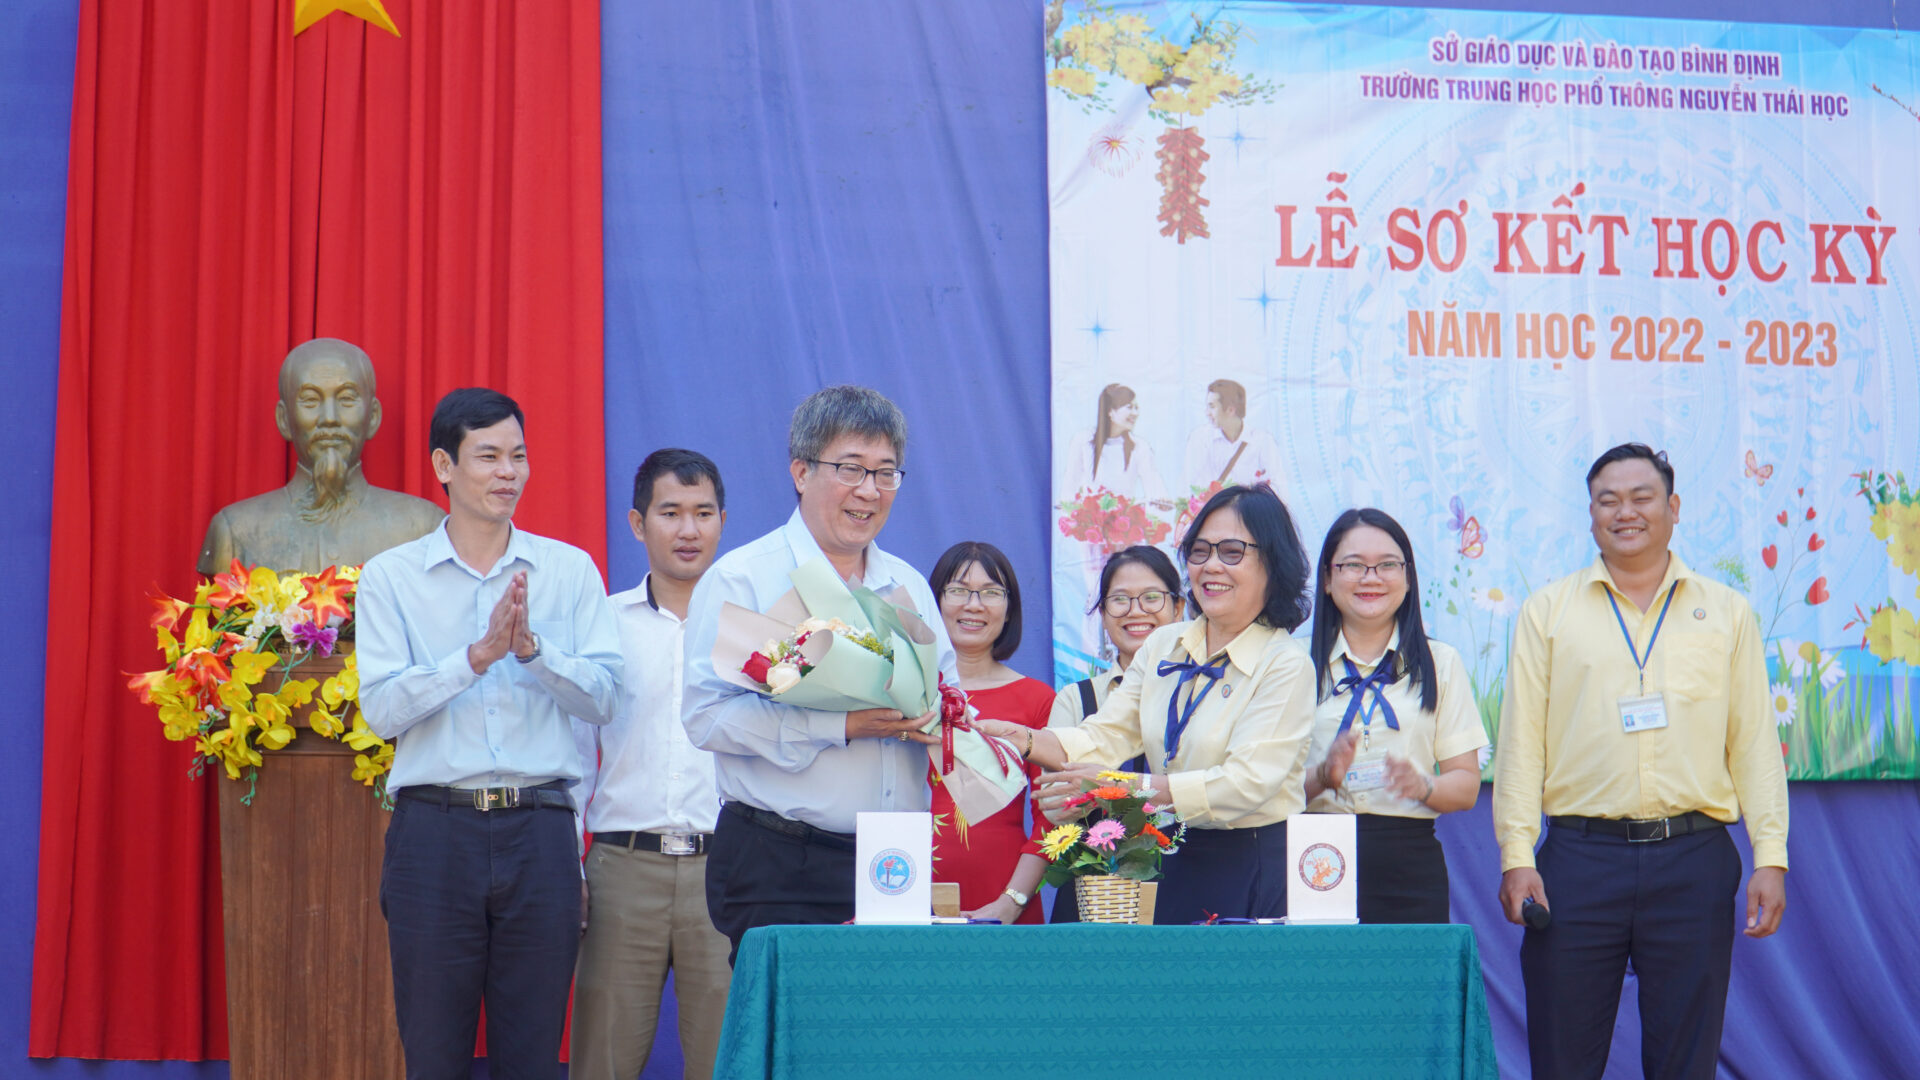 Trường Đại học Quang Trung kết nghĩa với Trường THPT Nguyễn Thái Học (Quy Nhơn)